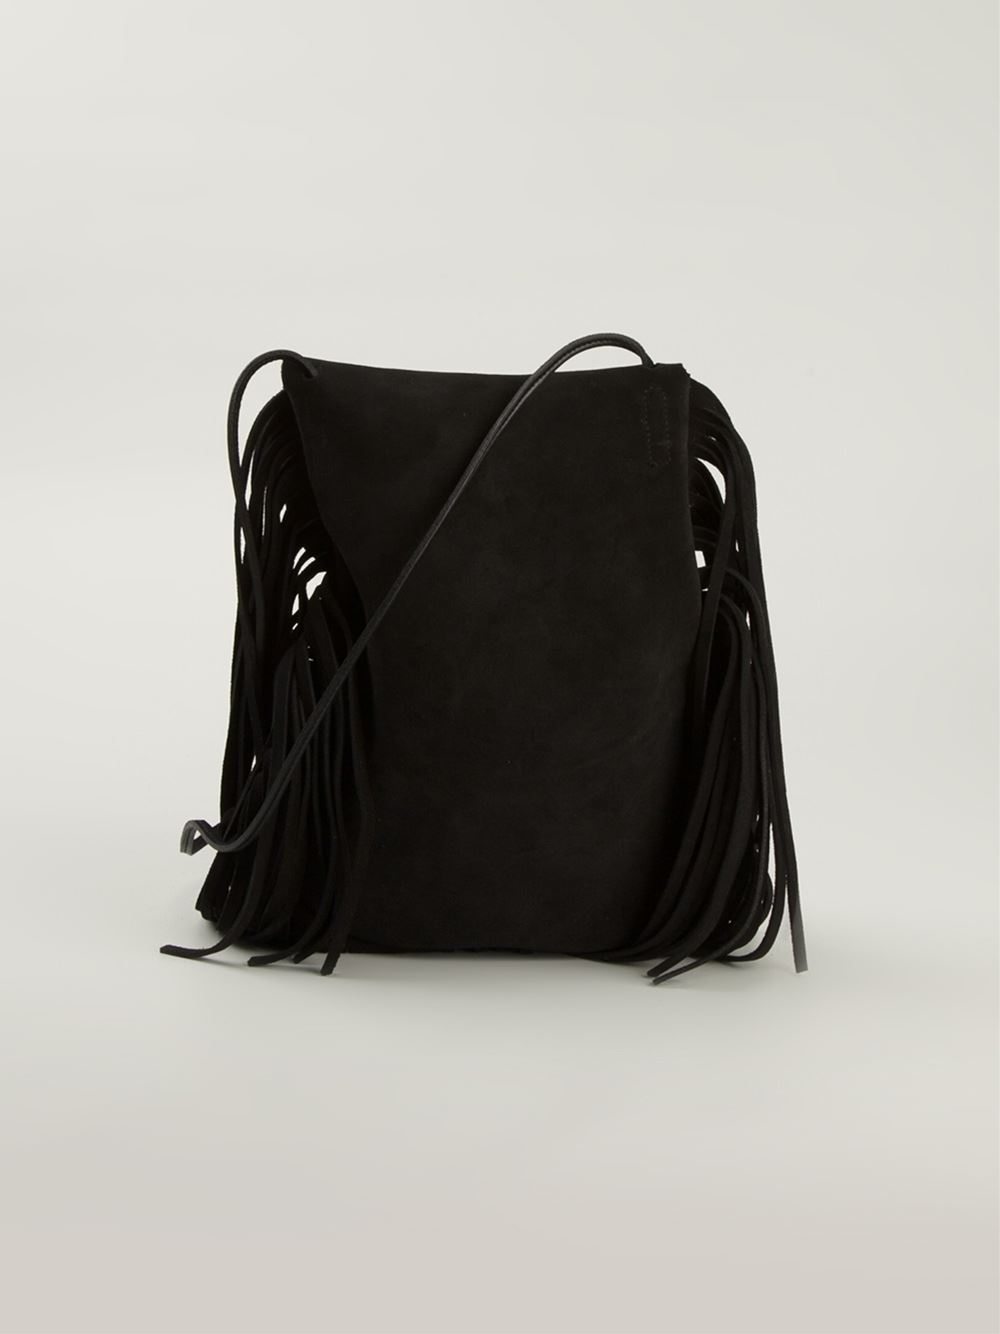 Saint laurent Anita Leather Shoulder Bag in Black | Lyst